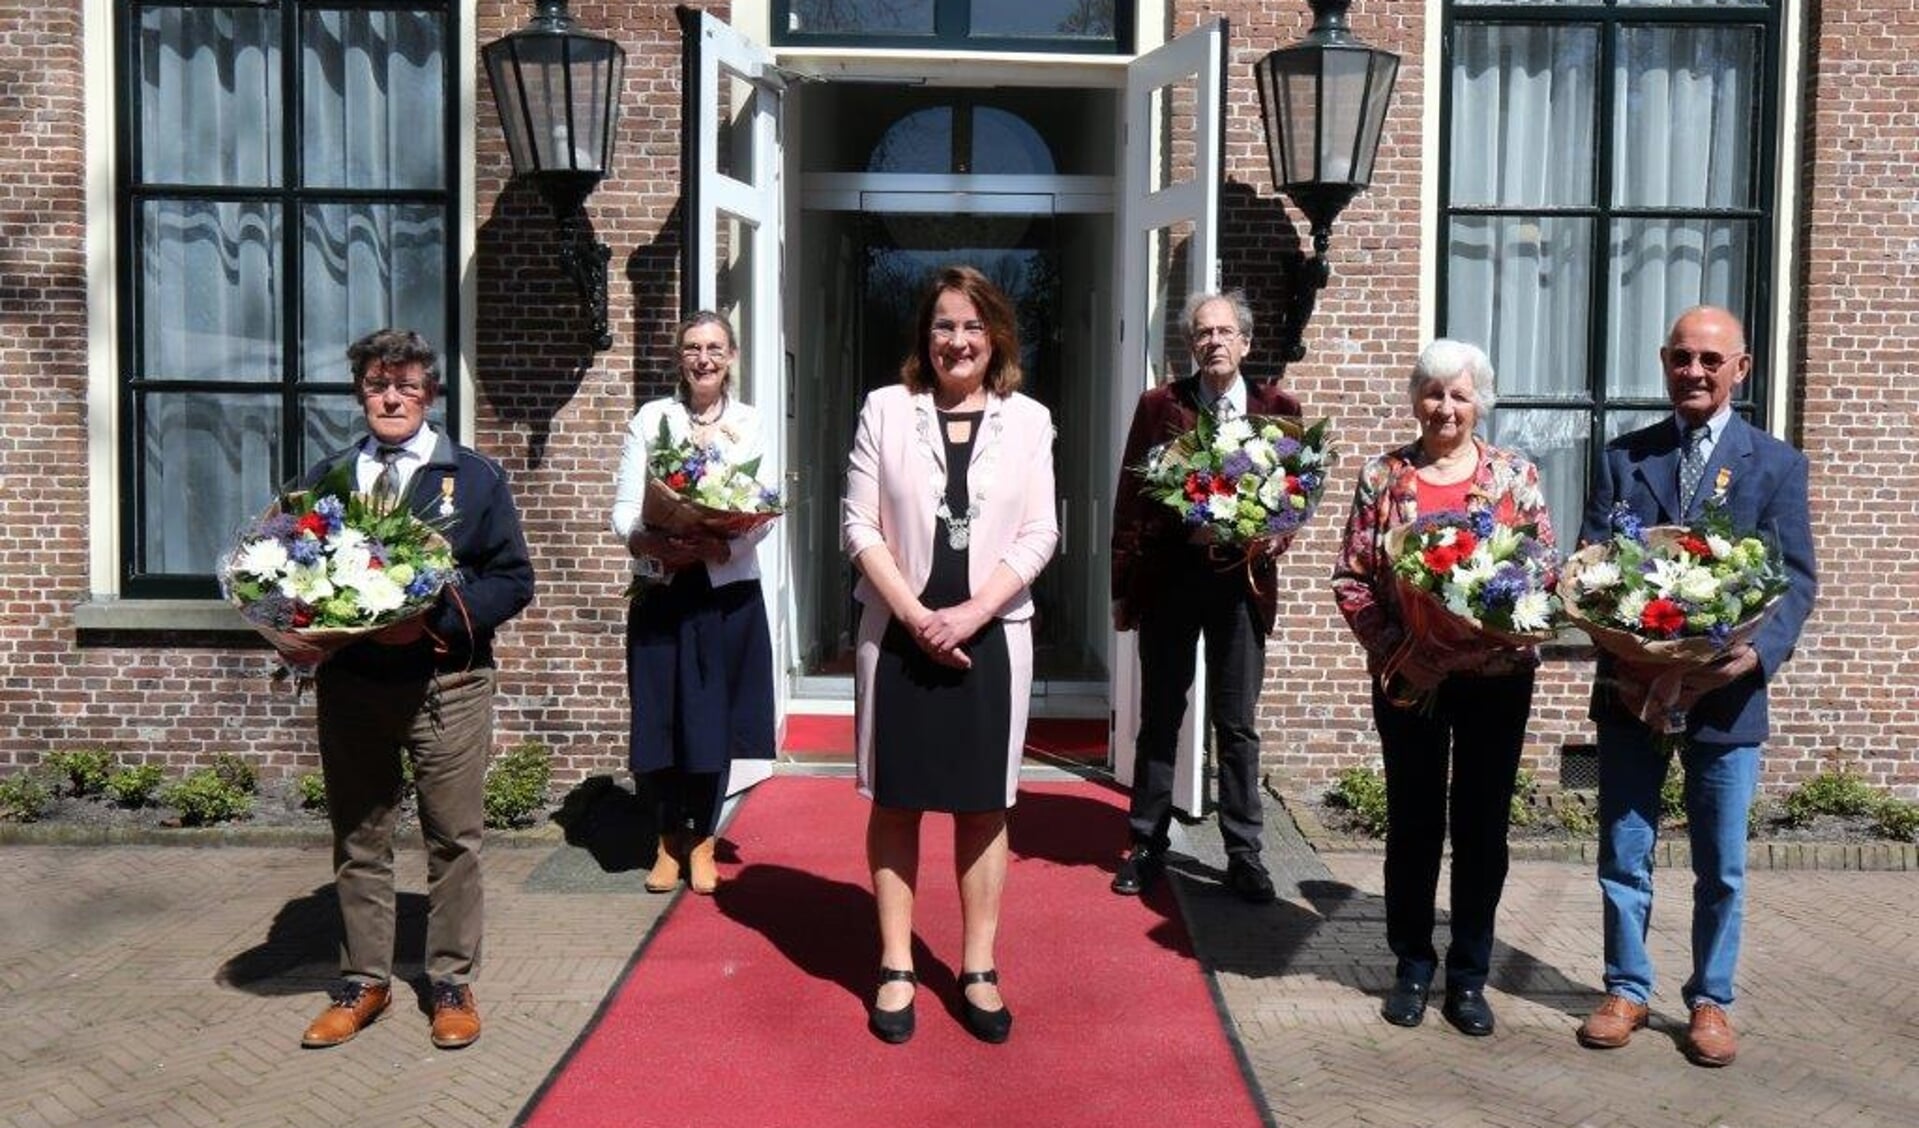 Van links naar rechts op de foto: Luitzen de Vries (Beetsterzwaag), Sijanda Jelsma (Beetsterzwaag), Henk Modderman (Beetsterzwaag) en Ria en Cor Hoekmeijer (Gorredijk). In het midden vooraan burgemeester Ellen van Selm